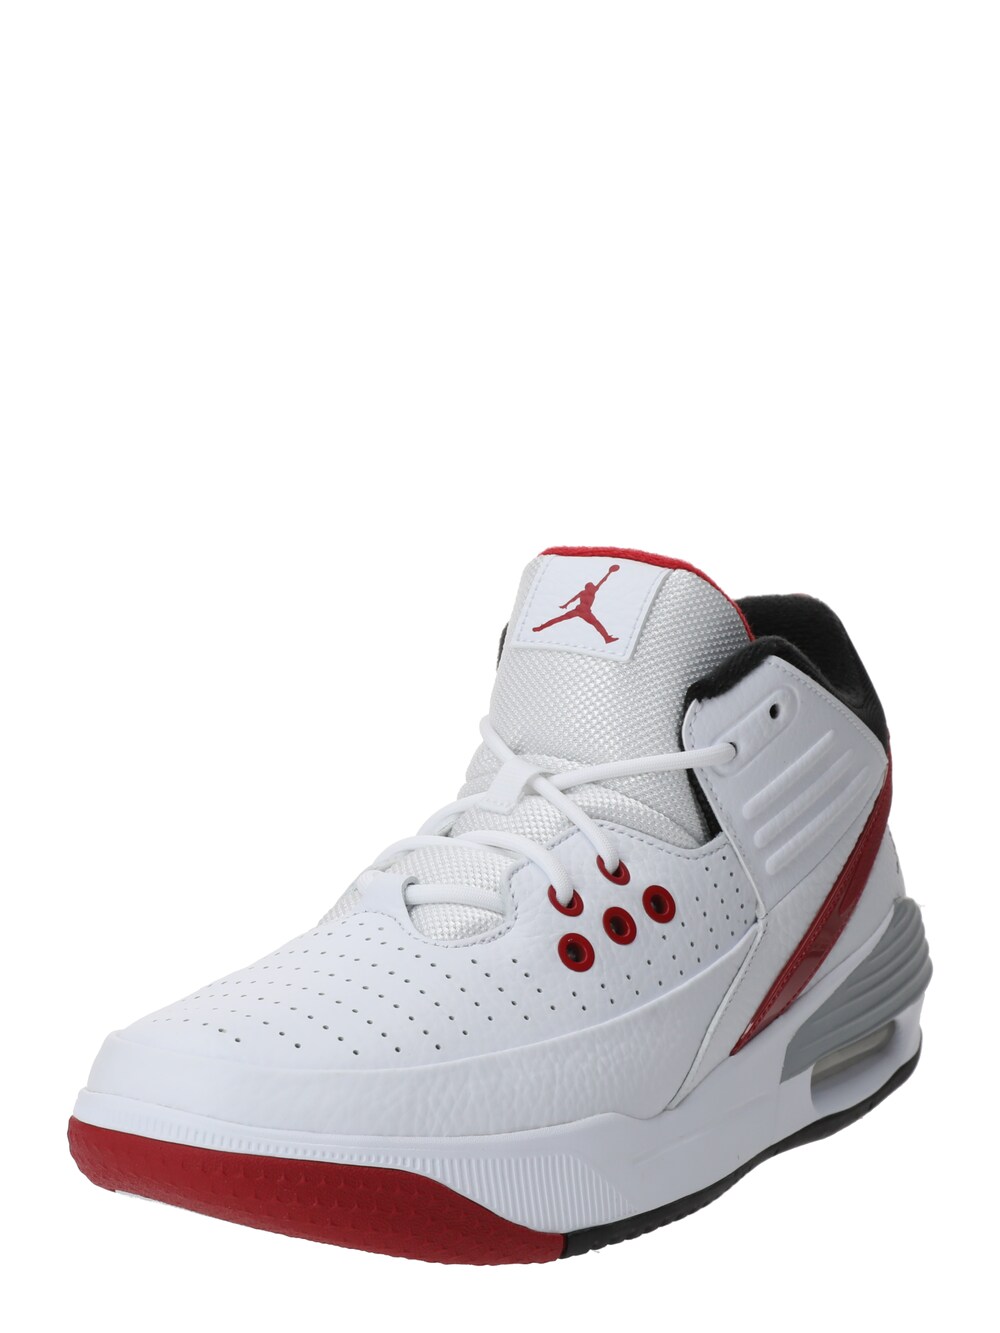 Высокие кроссовки Jordan Max Aura 5, белый высокие кеды jordan max aura 4 jordan черный спортивный красный белый